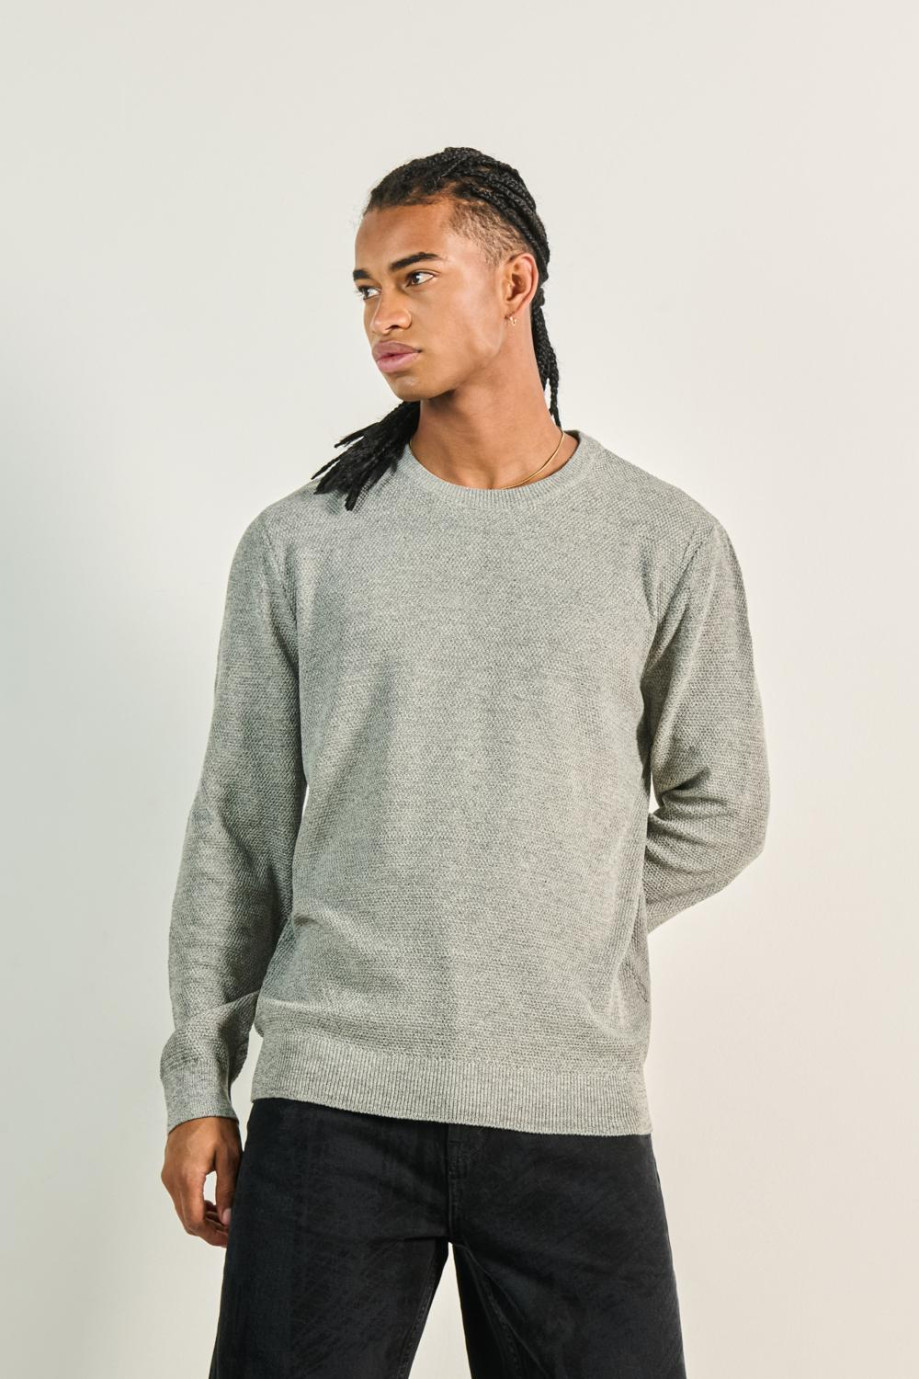 Suéter ajustado gris intenso tejido con cuello redondo